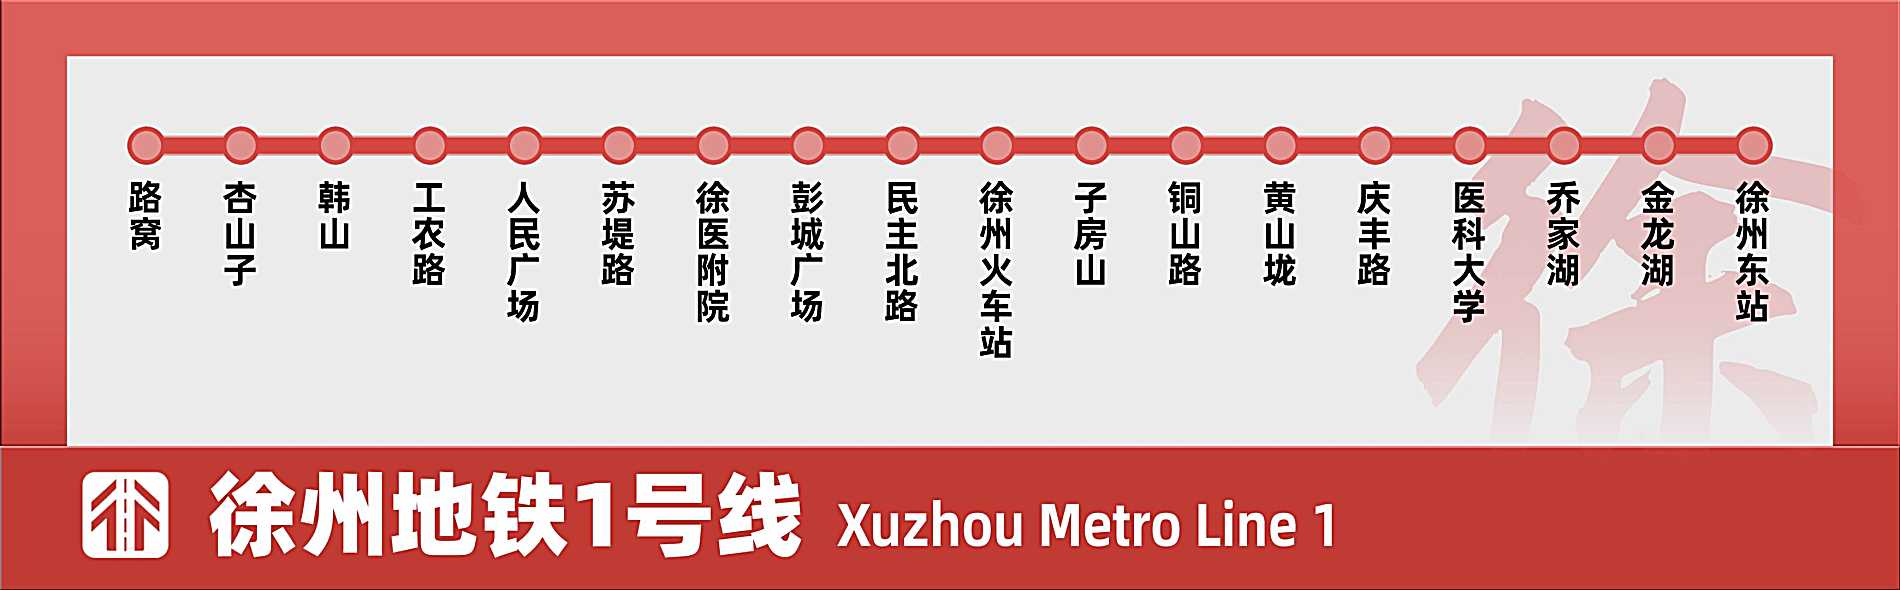 徐州地铁1号线速览